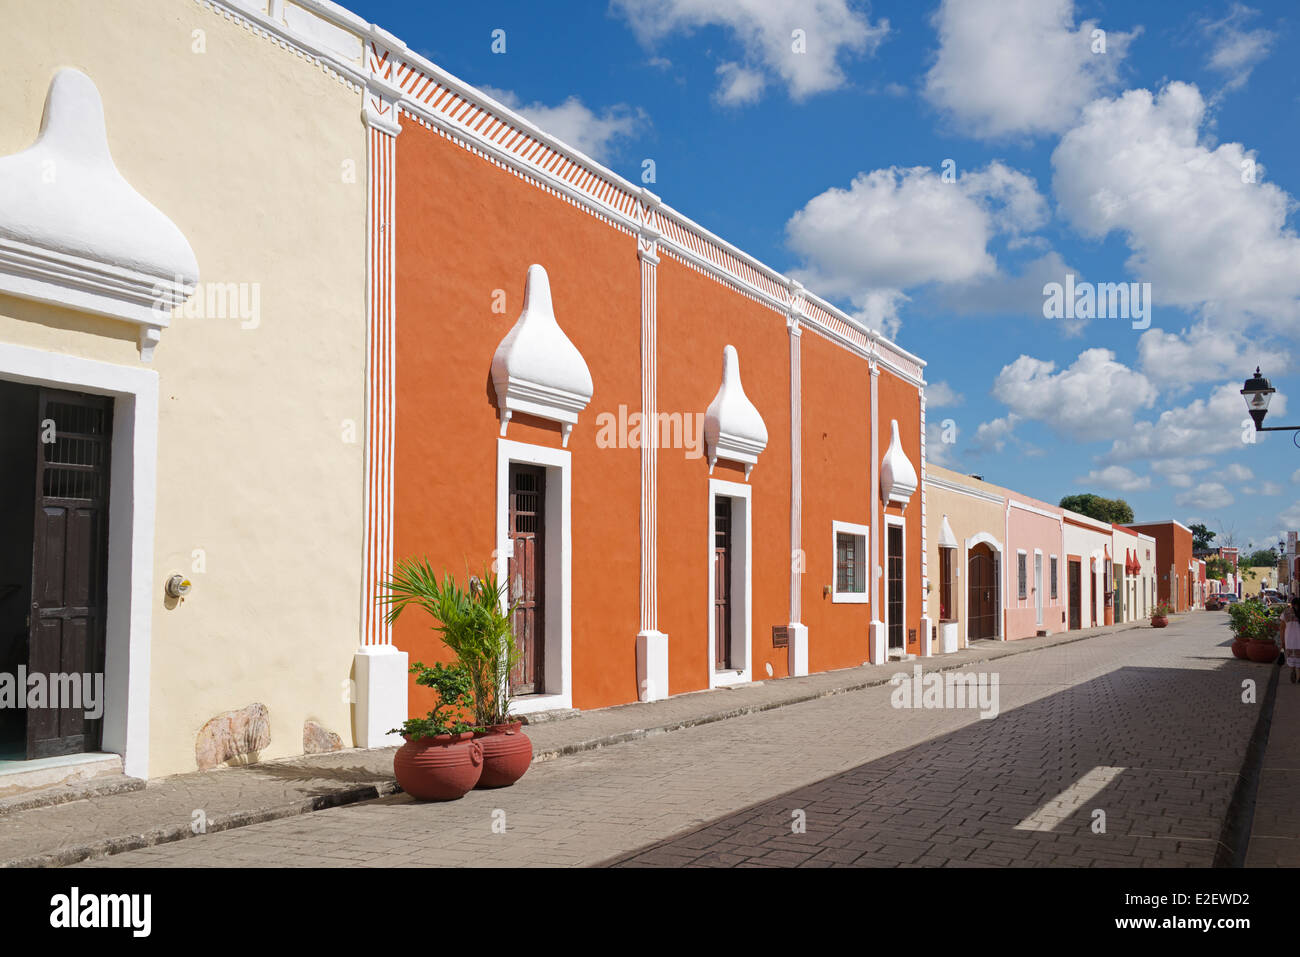 Colourful restored painted buildings Calzada de los Frailes Valladolid Yucatan Mexico Stock Photo